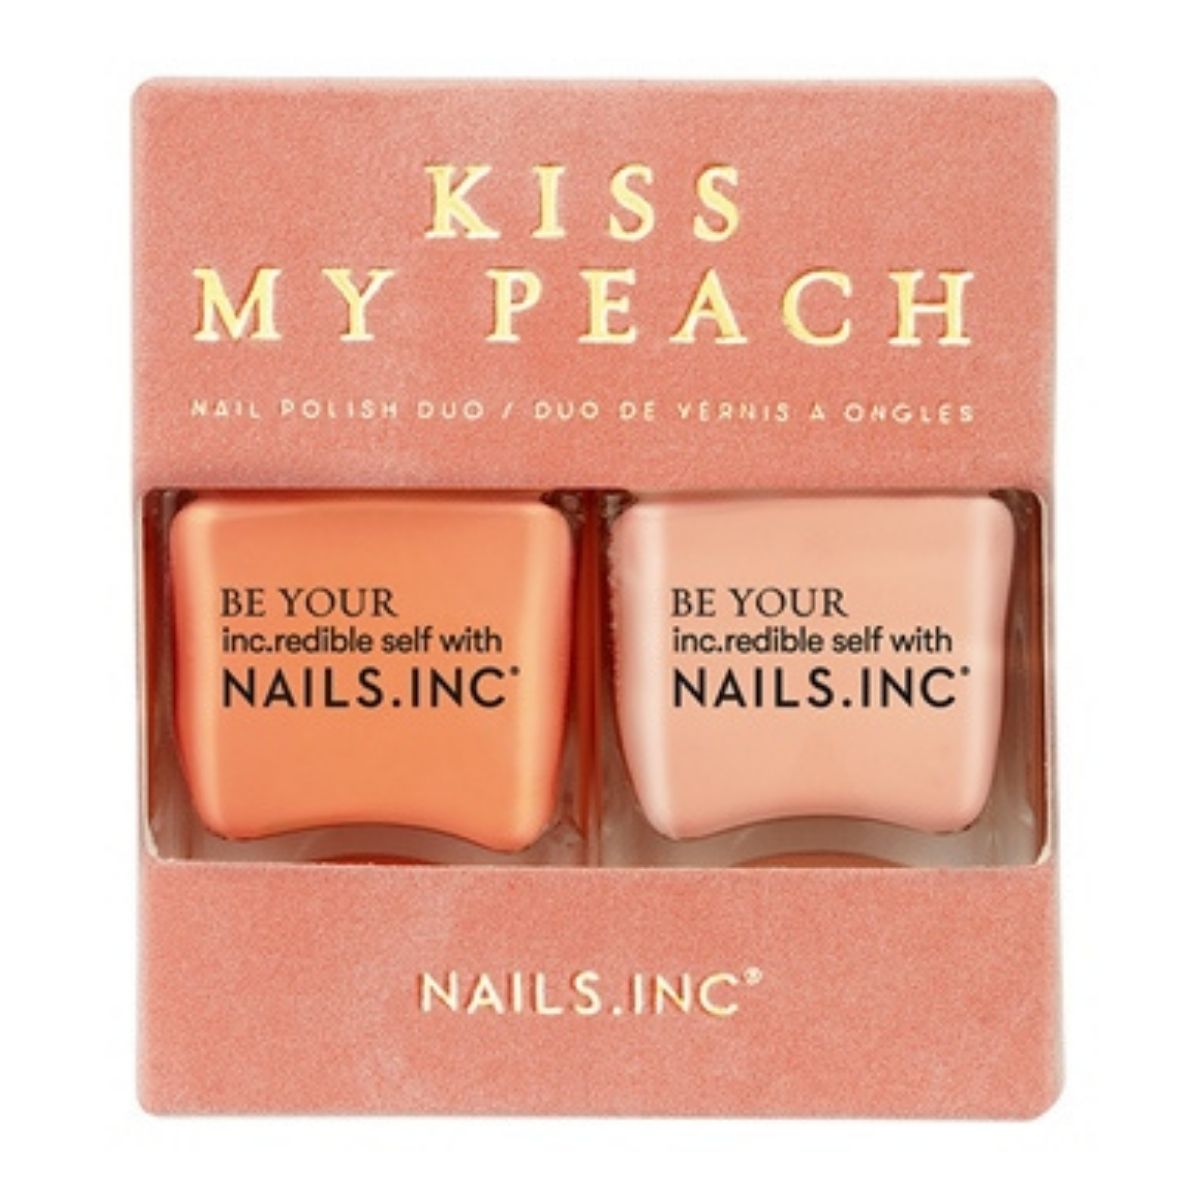 Nails.INC Polish Duo Kiss My Peach